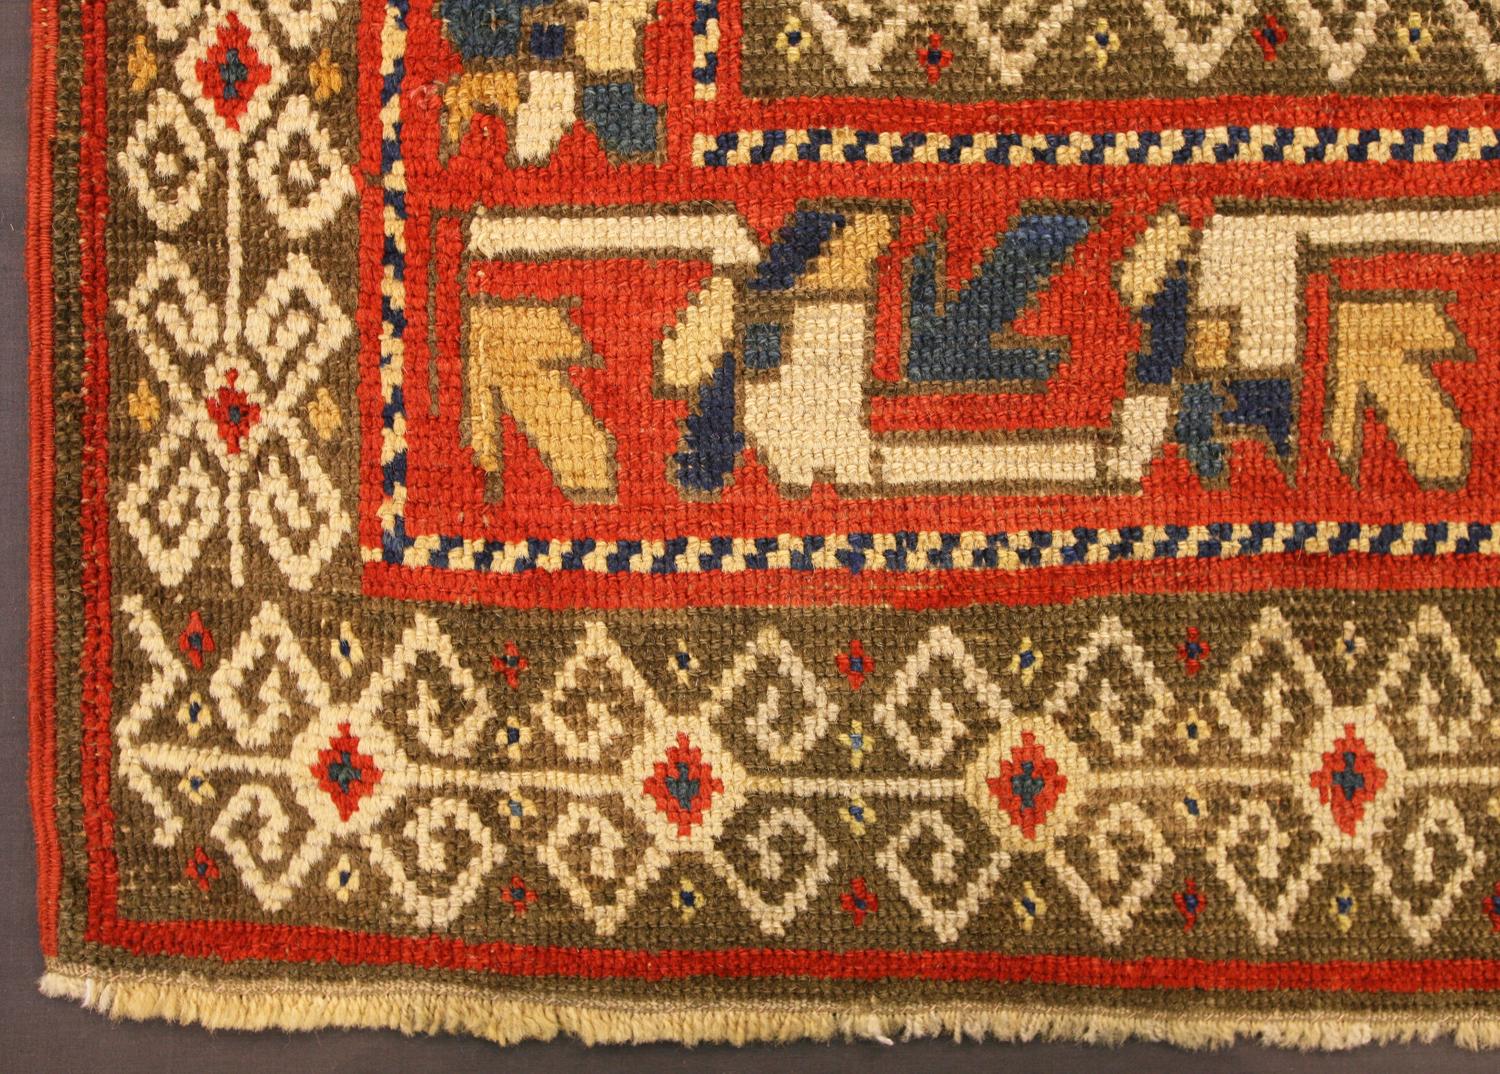 Dies ist ein antiker Ganja-Teppich, der Ende des 19. Jahrhunderts im zentralen Teil des Kaukasus gewebt wurde. Es hat ein traditionelles Ganja-Muster mit diagonalen Streifen, in denen sich hakenförmige Kästchen wiederholen. Die Bordüren dieses